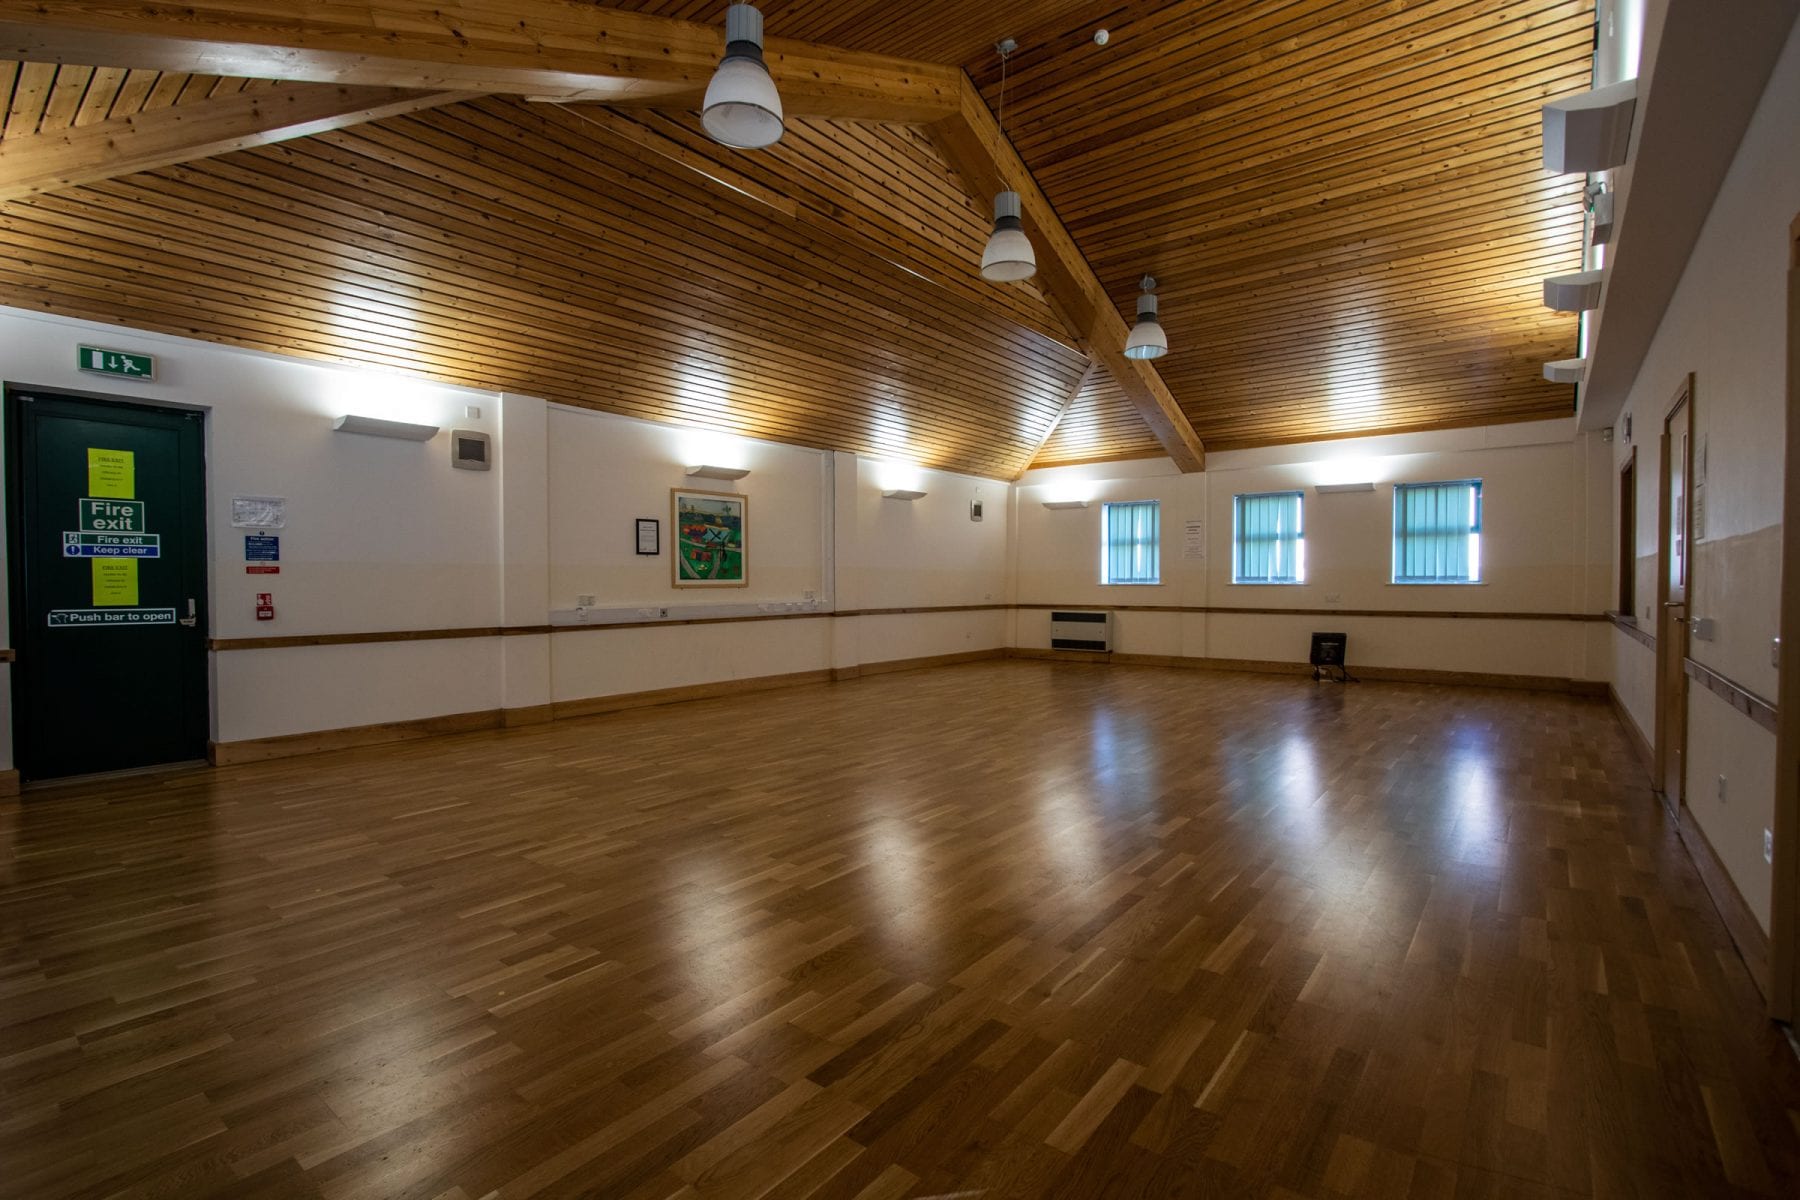 Petuaria Community Centre Main Hall interior